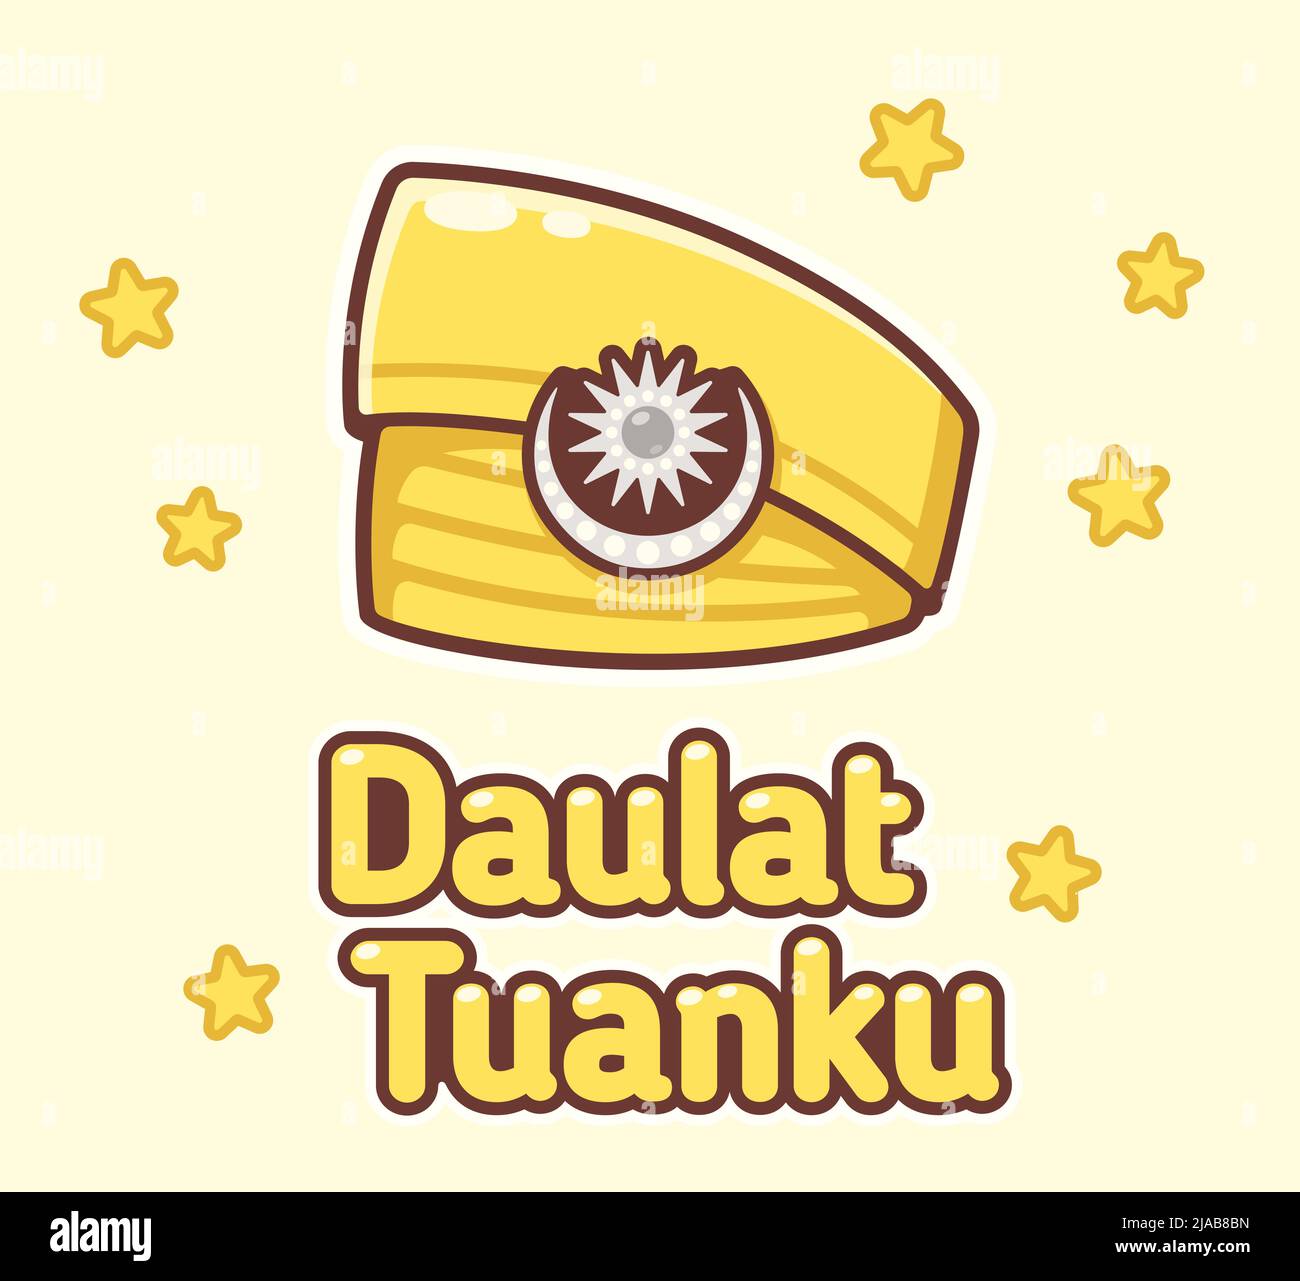 Daulat Tuanku (viva il re in Malay). Festeggiamo il compleanno di Yang di-Pertuan Agong in Malesia. Banner vettoriale cartoon con copricapo tradizionale Illustrazione Vettoriale